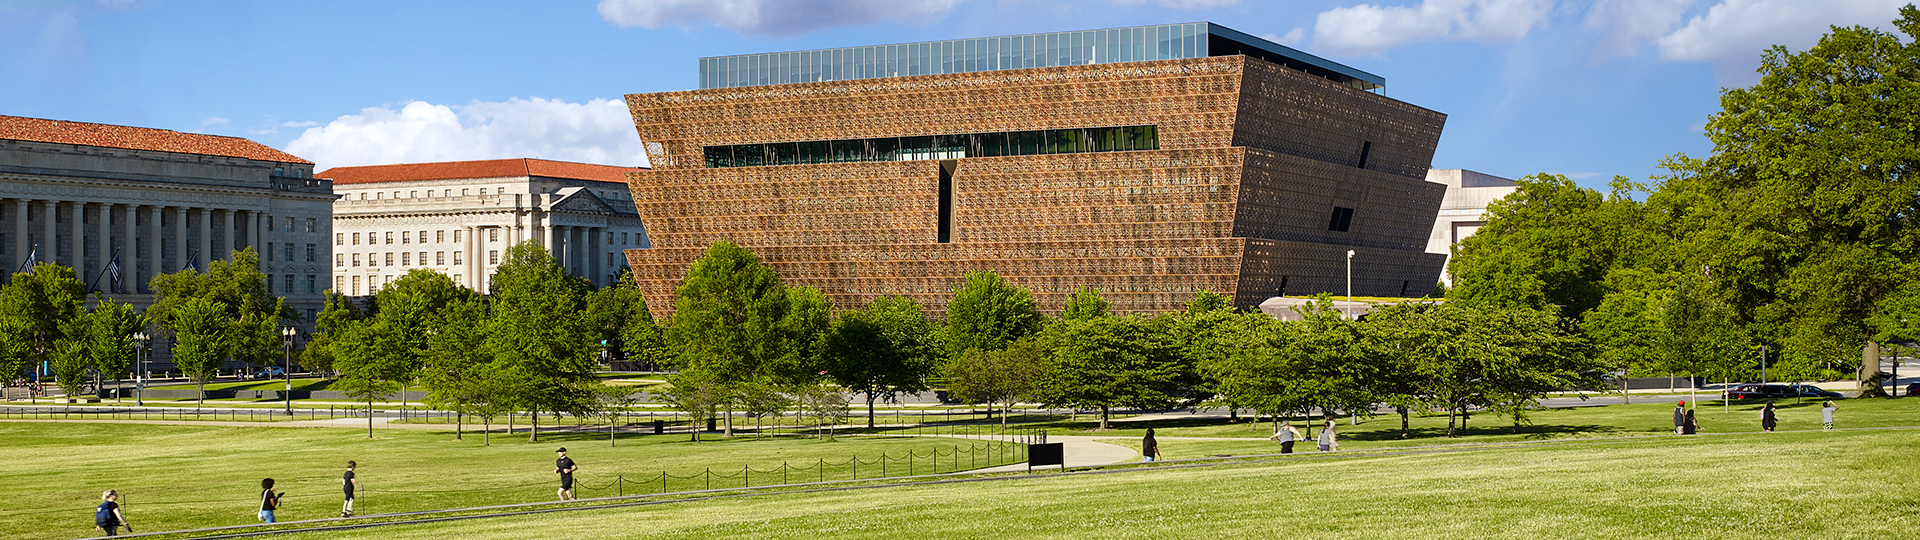 Museo nazionale di storia e cultura afroamericana sul National Mall con Washington Monument